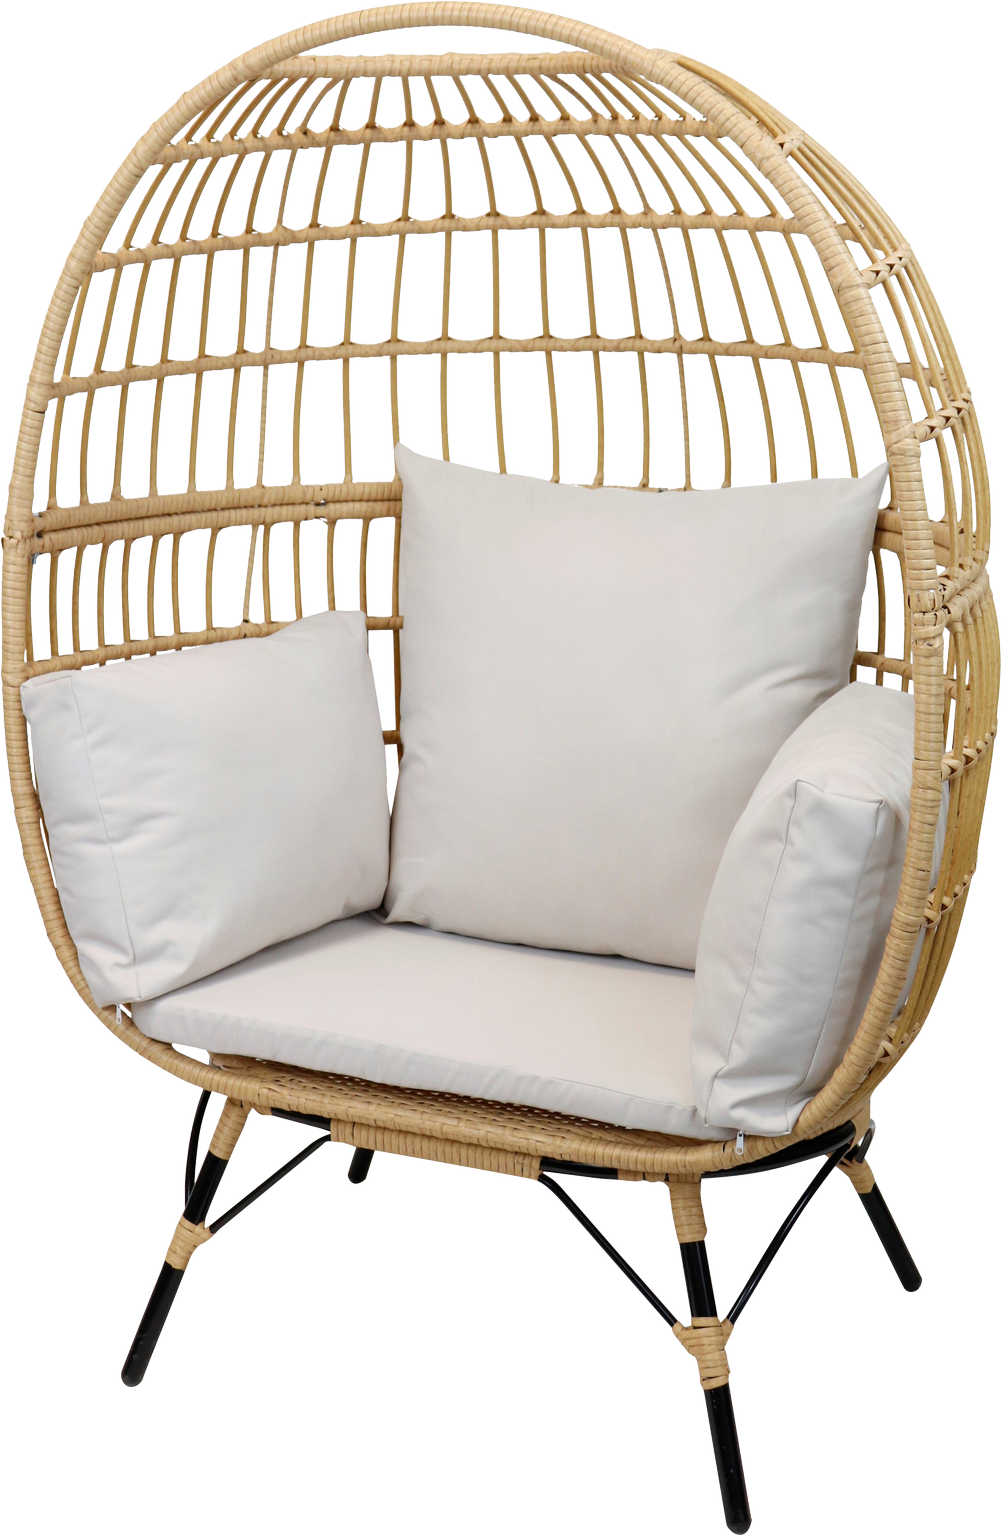 卸値入手困難!!【VERNE】Petit Relaxing Chair 在庫限り テーブル・チェア・ハンモック